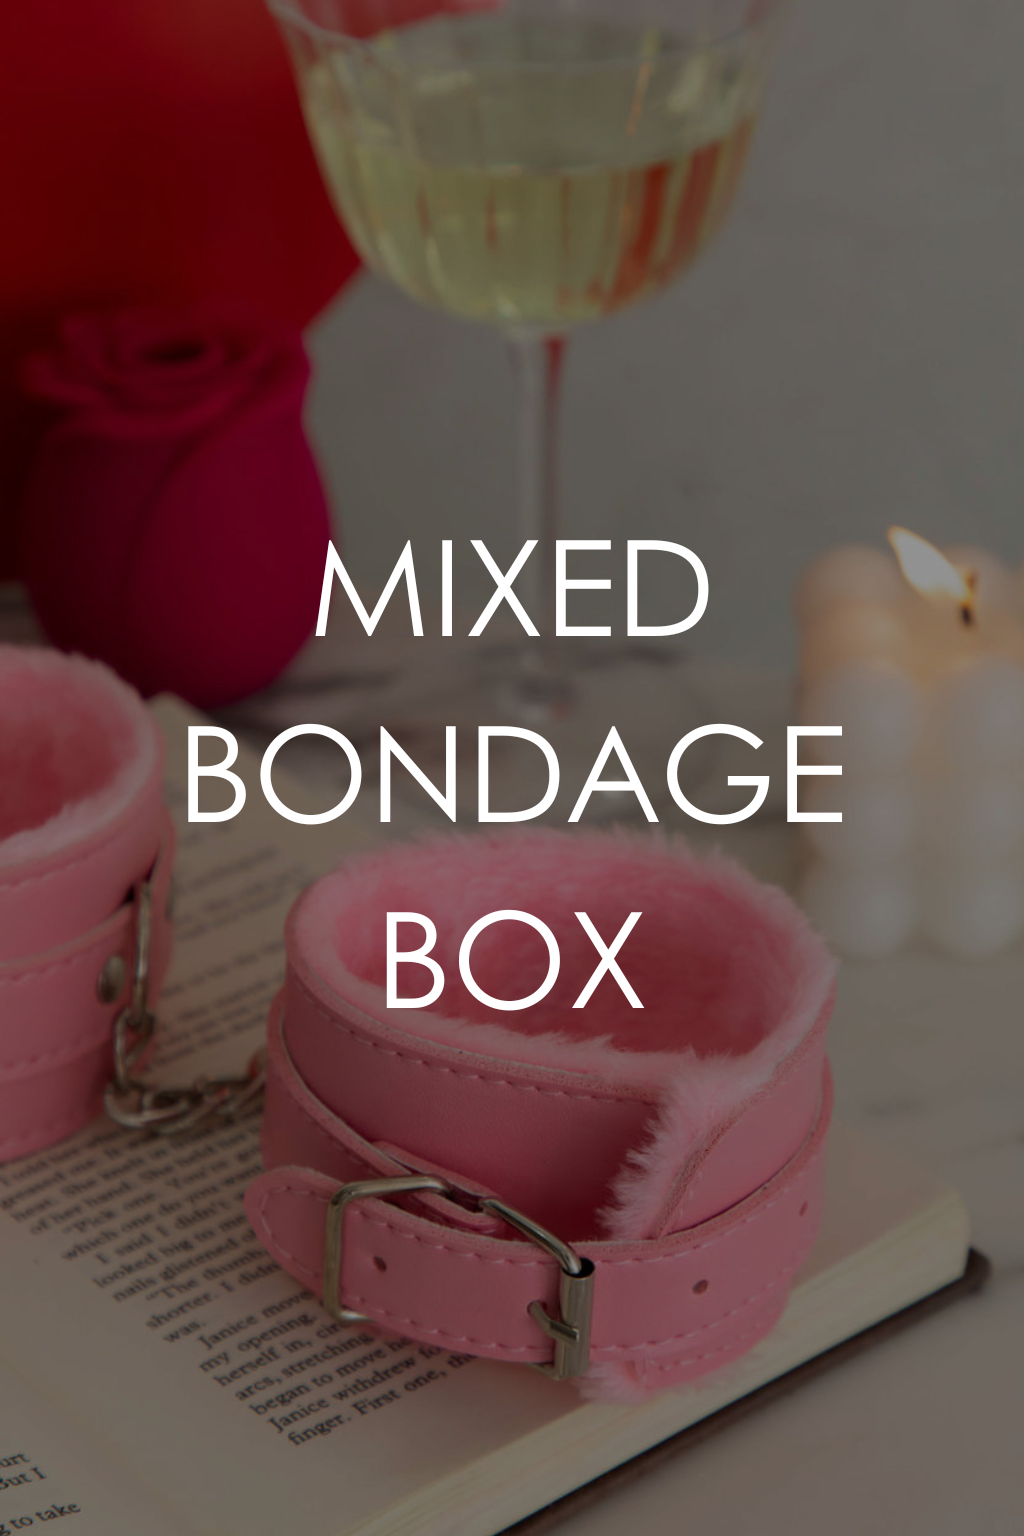 Mixed Bondage Box